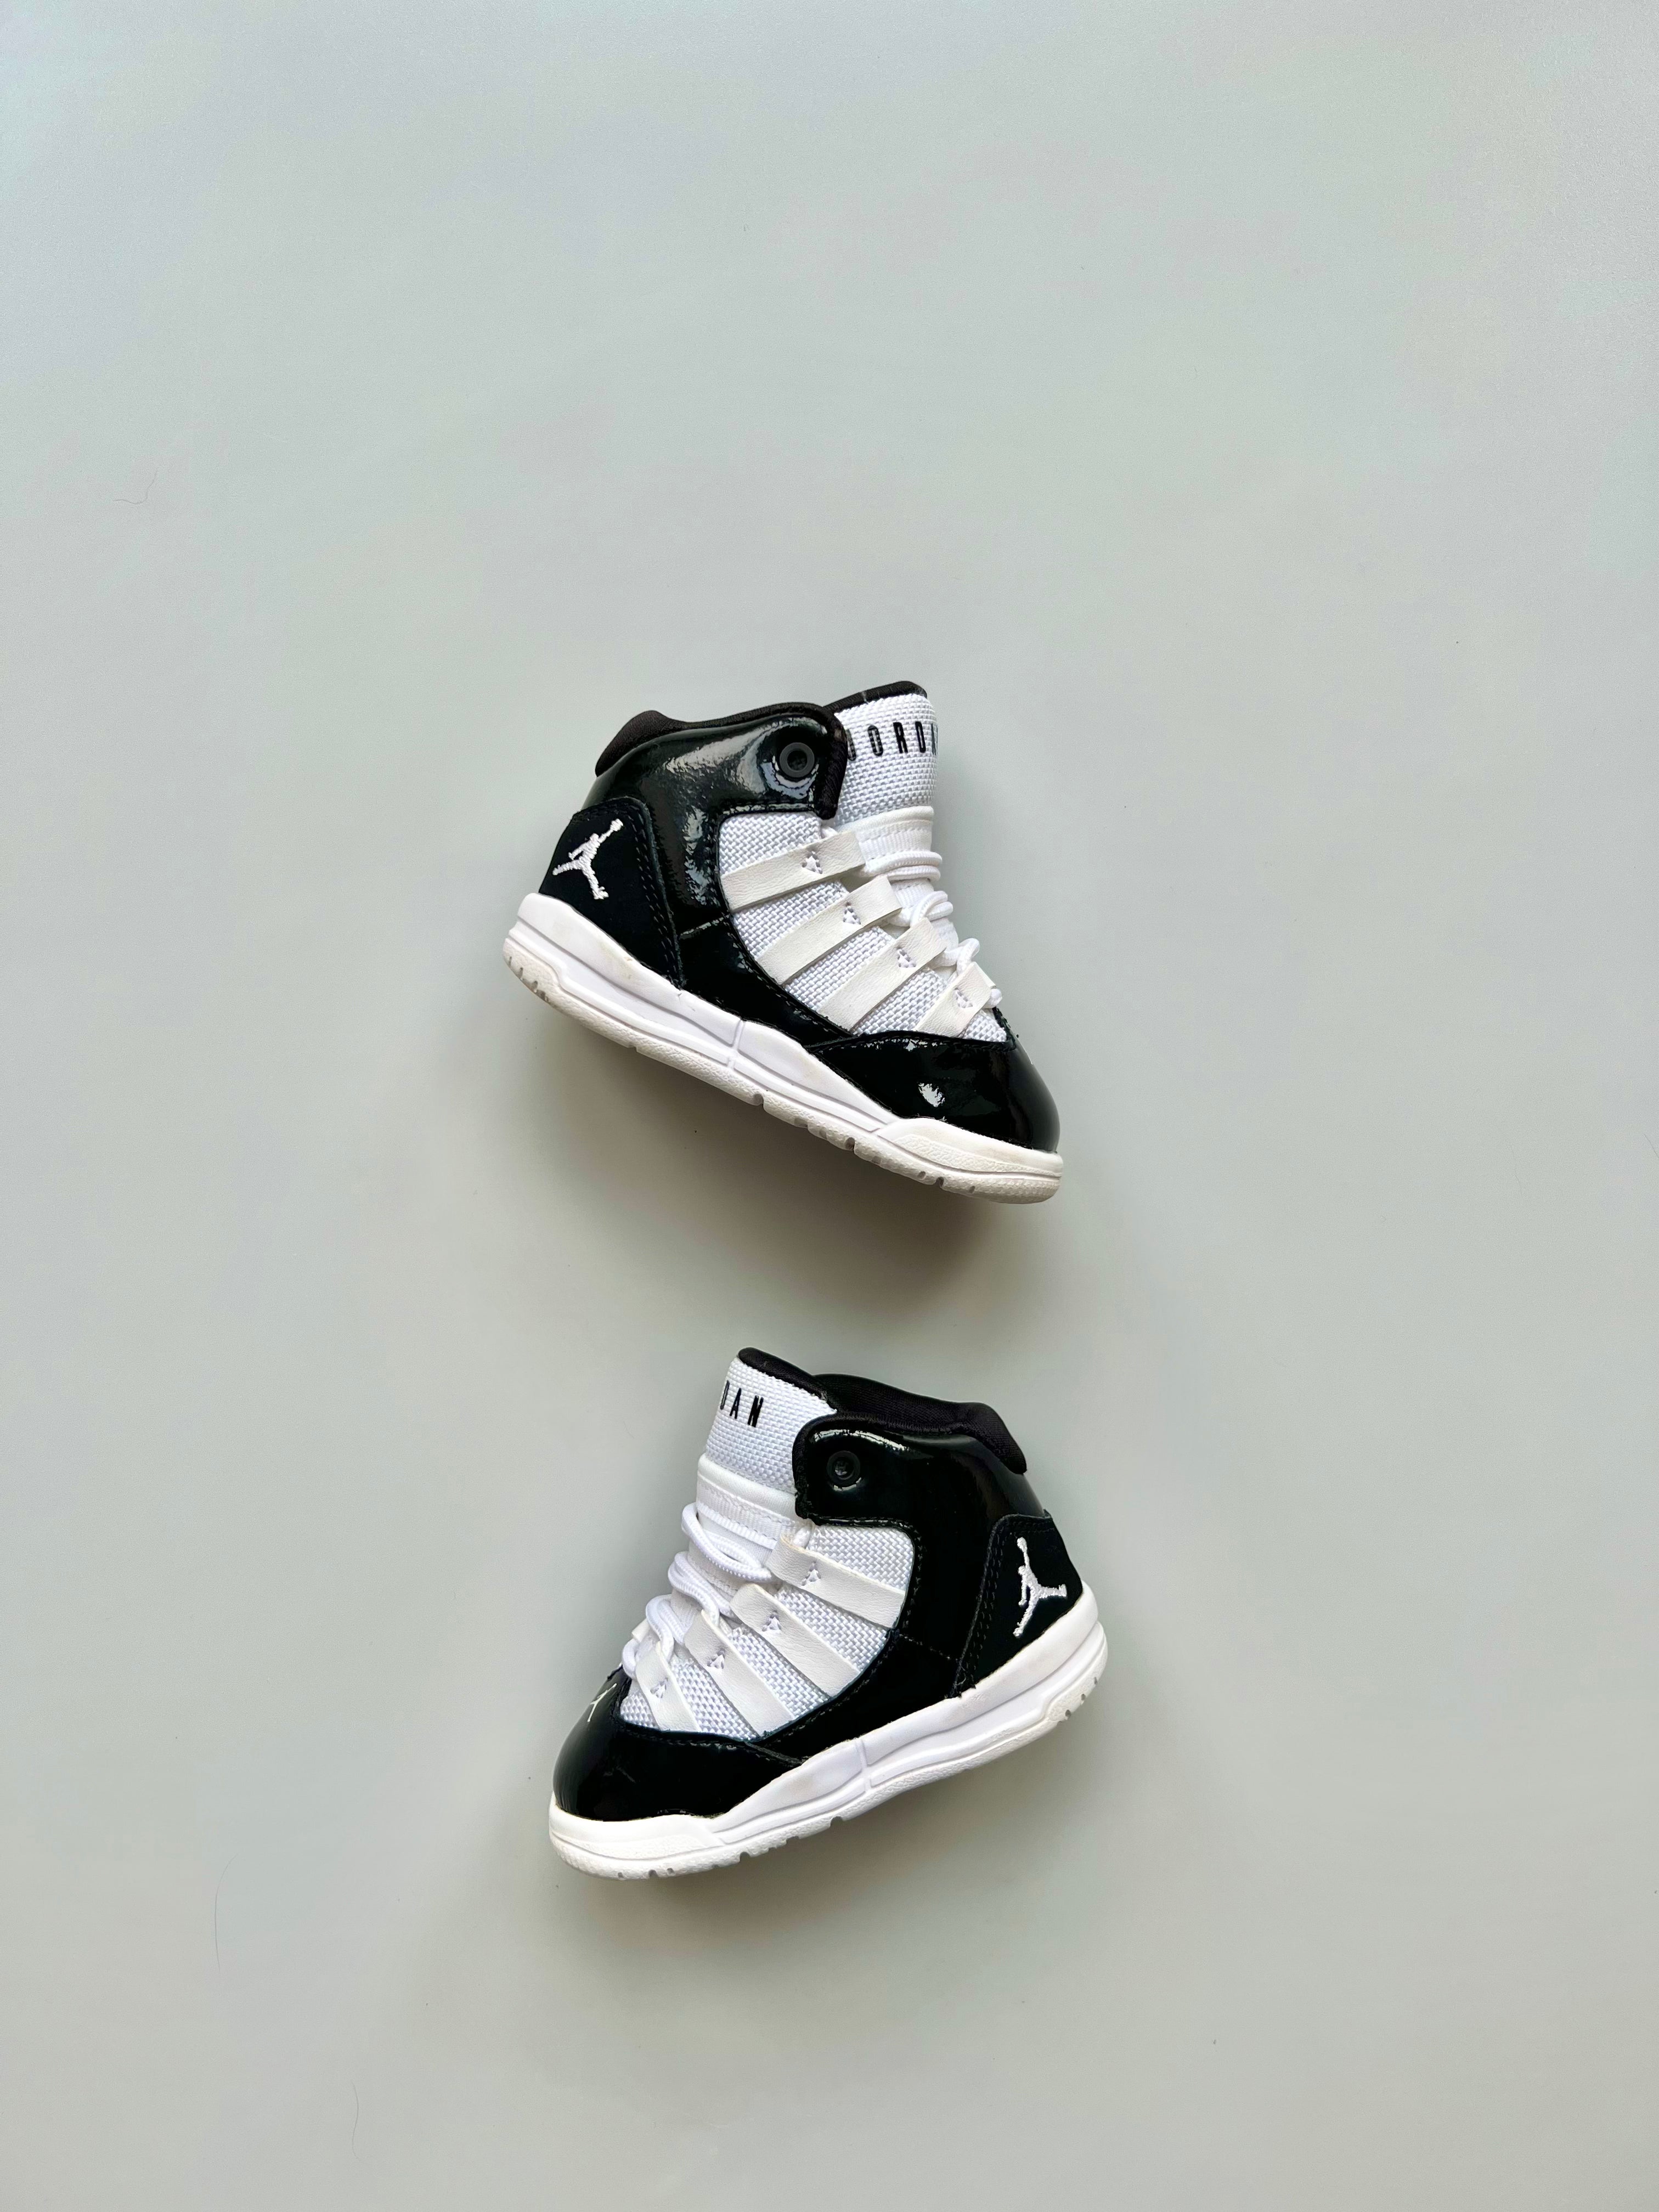 Nike Jordan Max Aura Sneakers Size 3.5